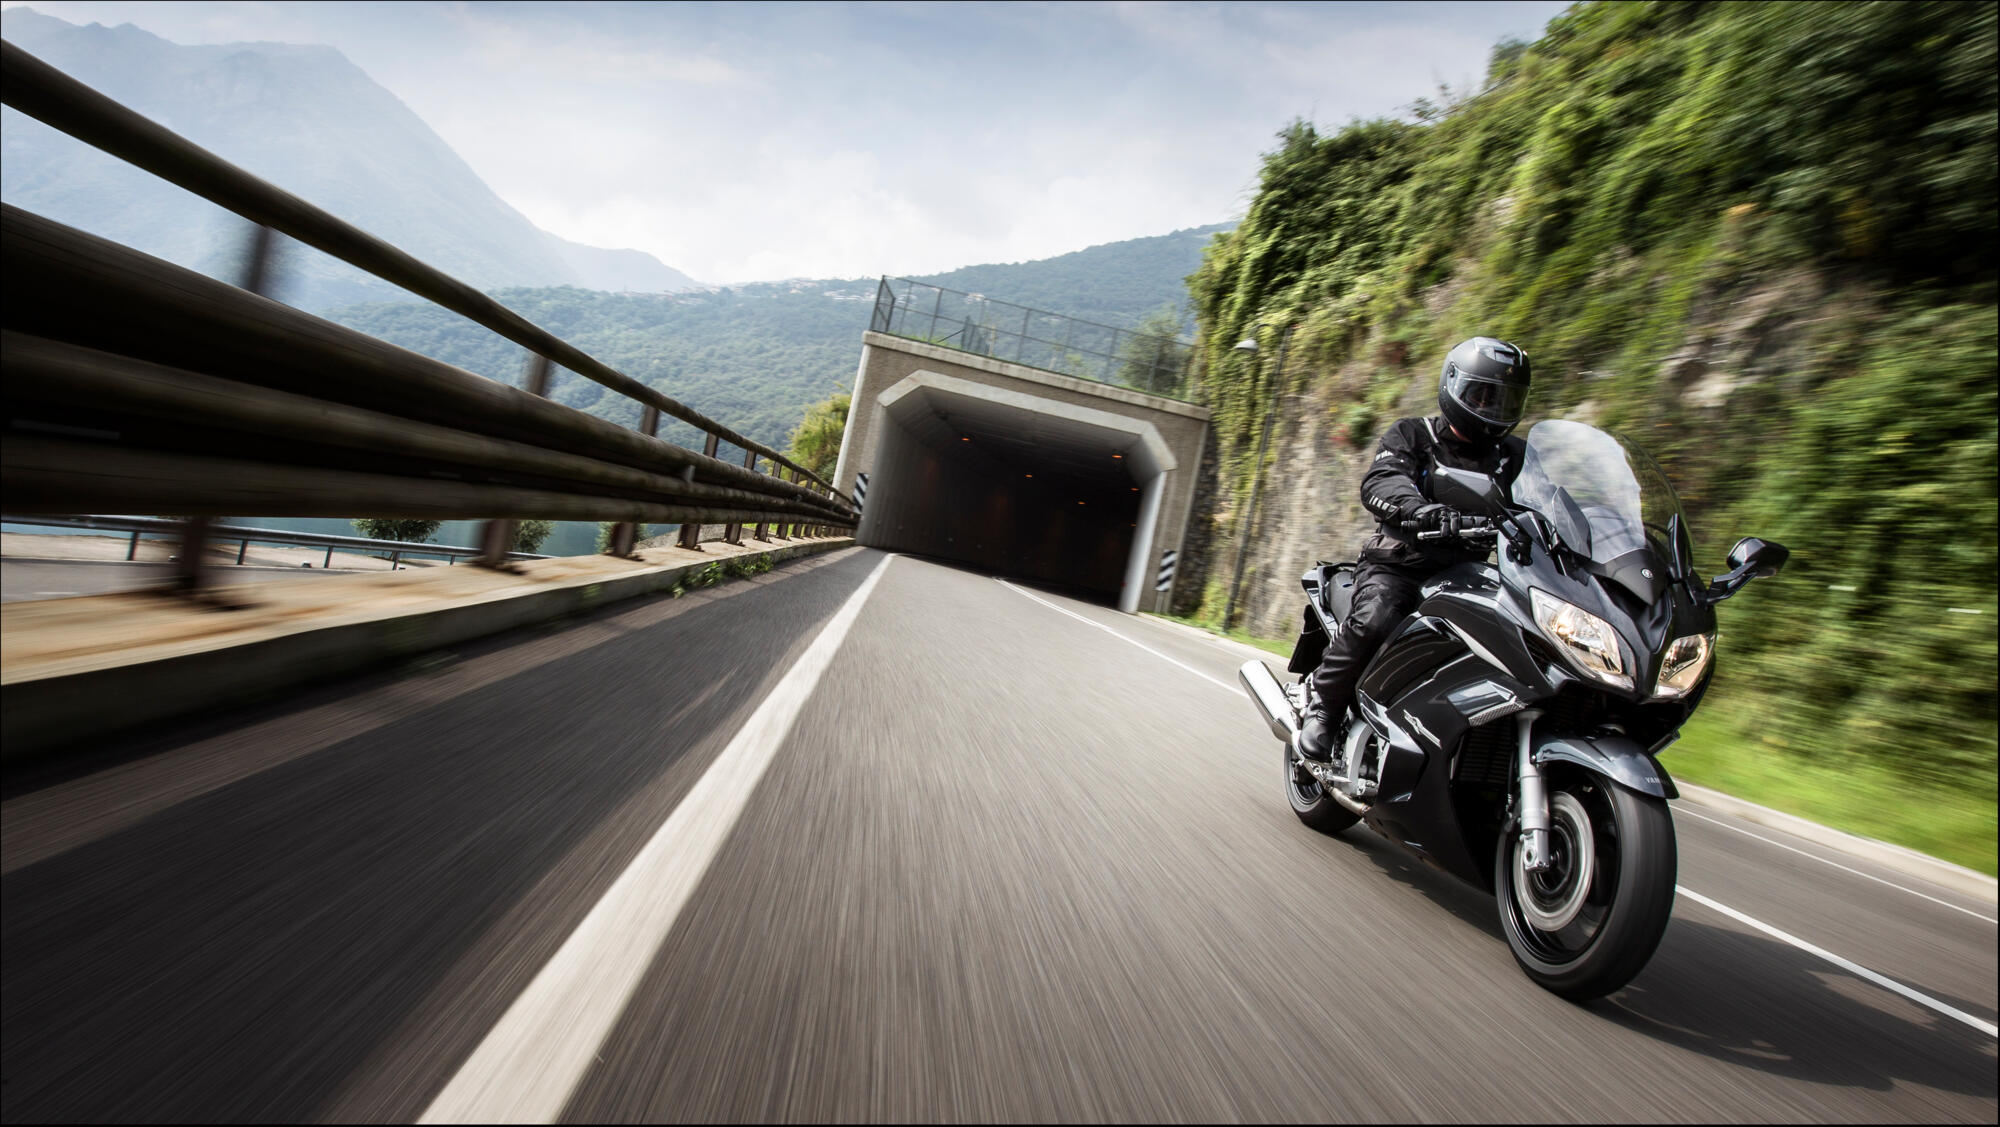 QYA de Haute qualité Pratique Accessoires Moto Moto Moto arrière Repose-Pieds Repose-Pieds Pédale for Yamaha FJR1300 FZ1 FZ6 FZ6R FZ400 XJR1200 1300 XJ6 Matériel Robuste